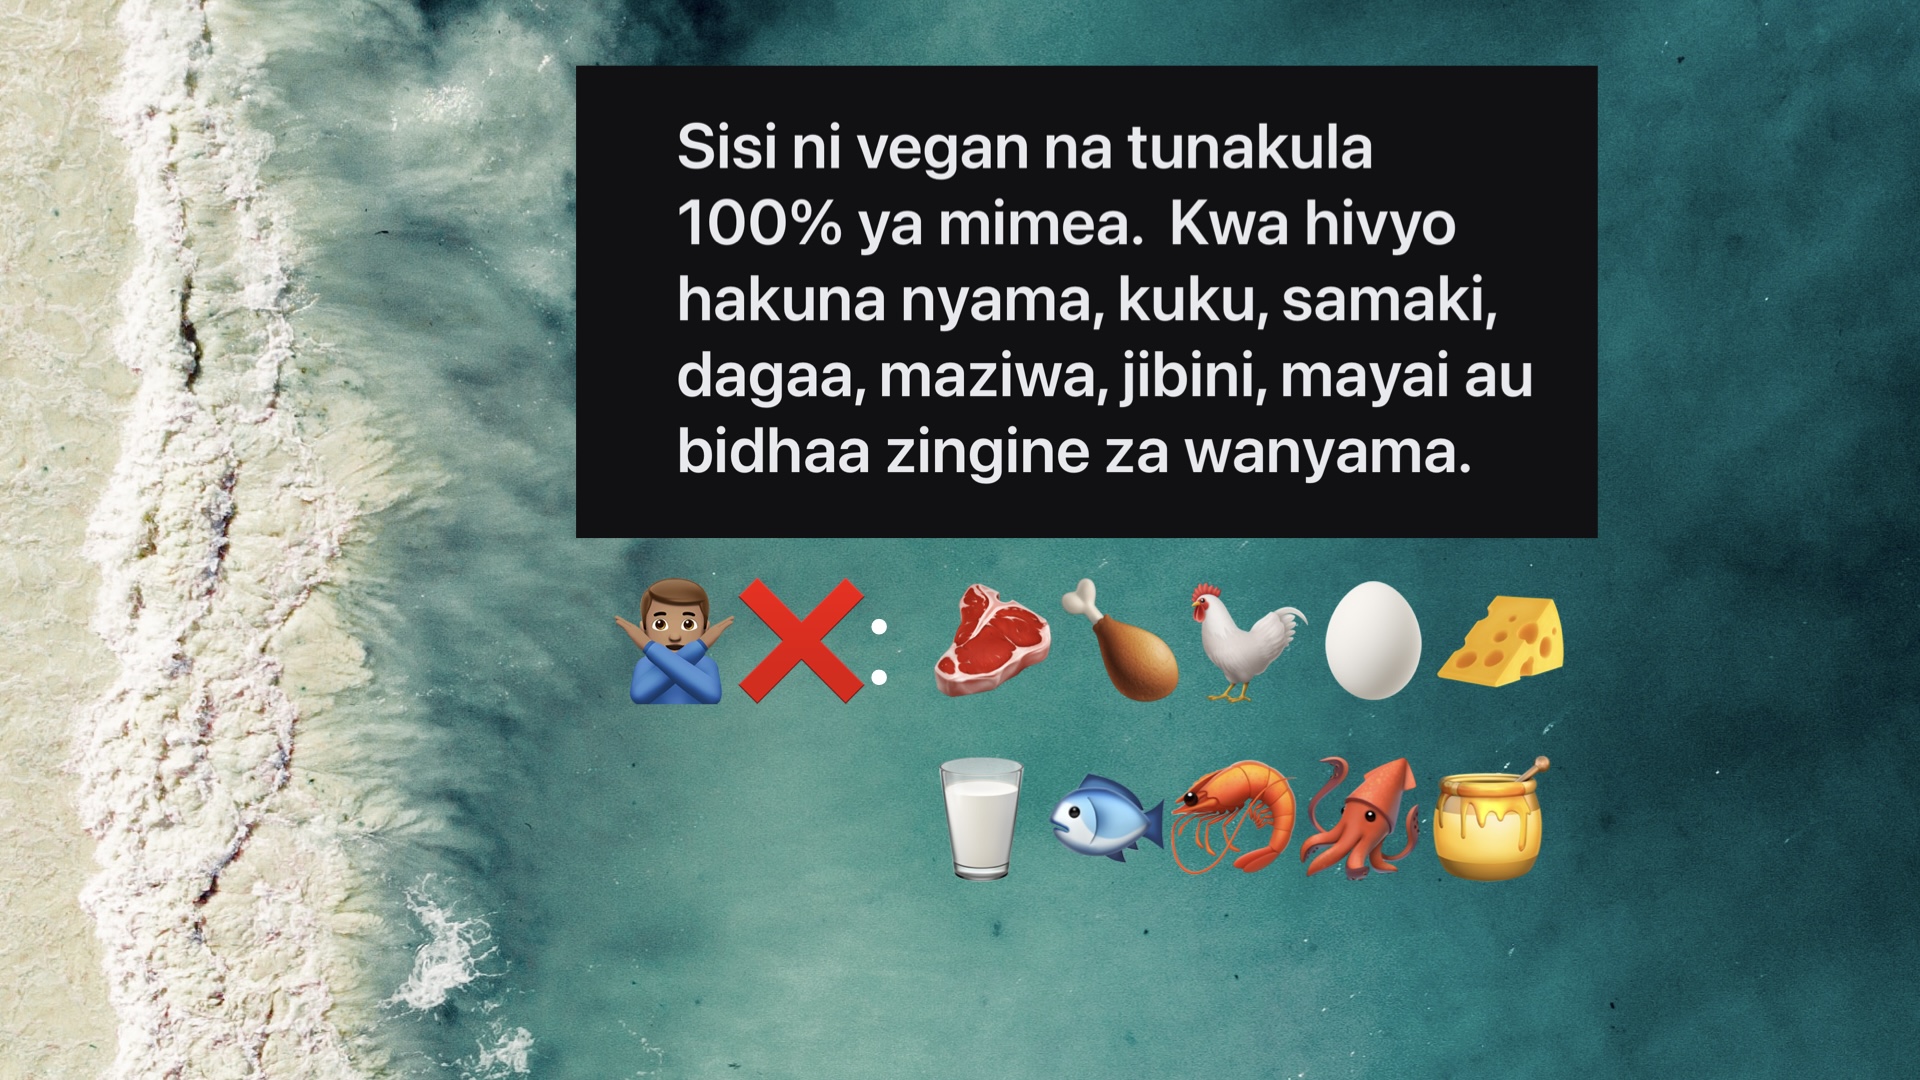 Gebruik deze afbeelding als telefoonachtergrondje om je leven als veganist in Zanzibar makkelijker te maken.